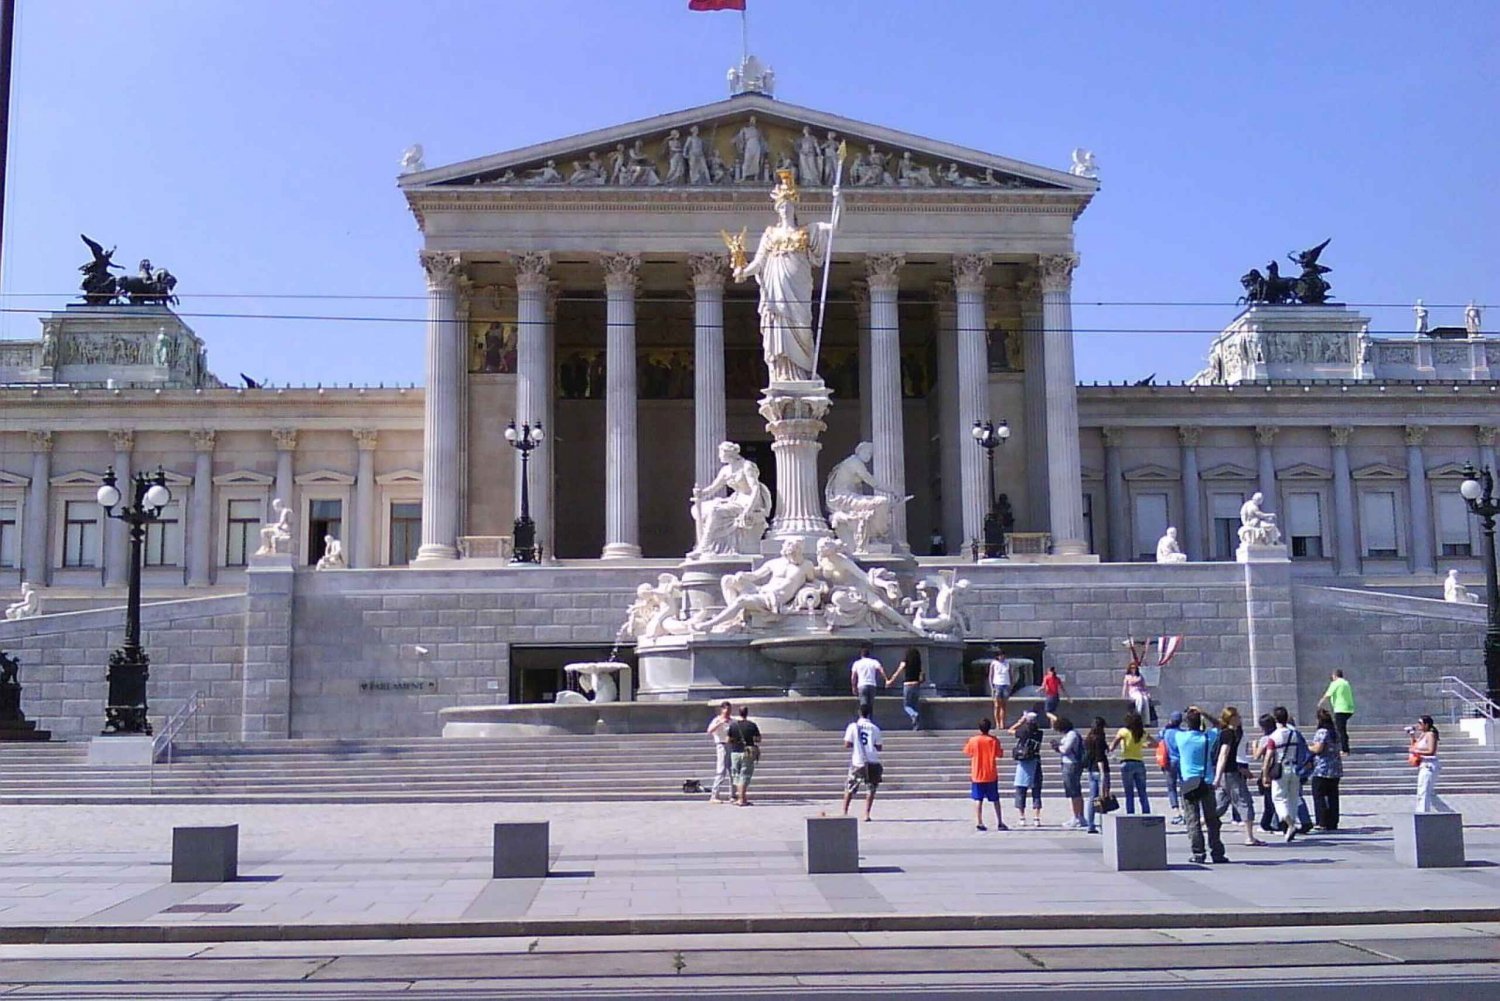 Kejsardömet Wien: Heldagsutflykt från Budapest